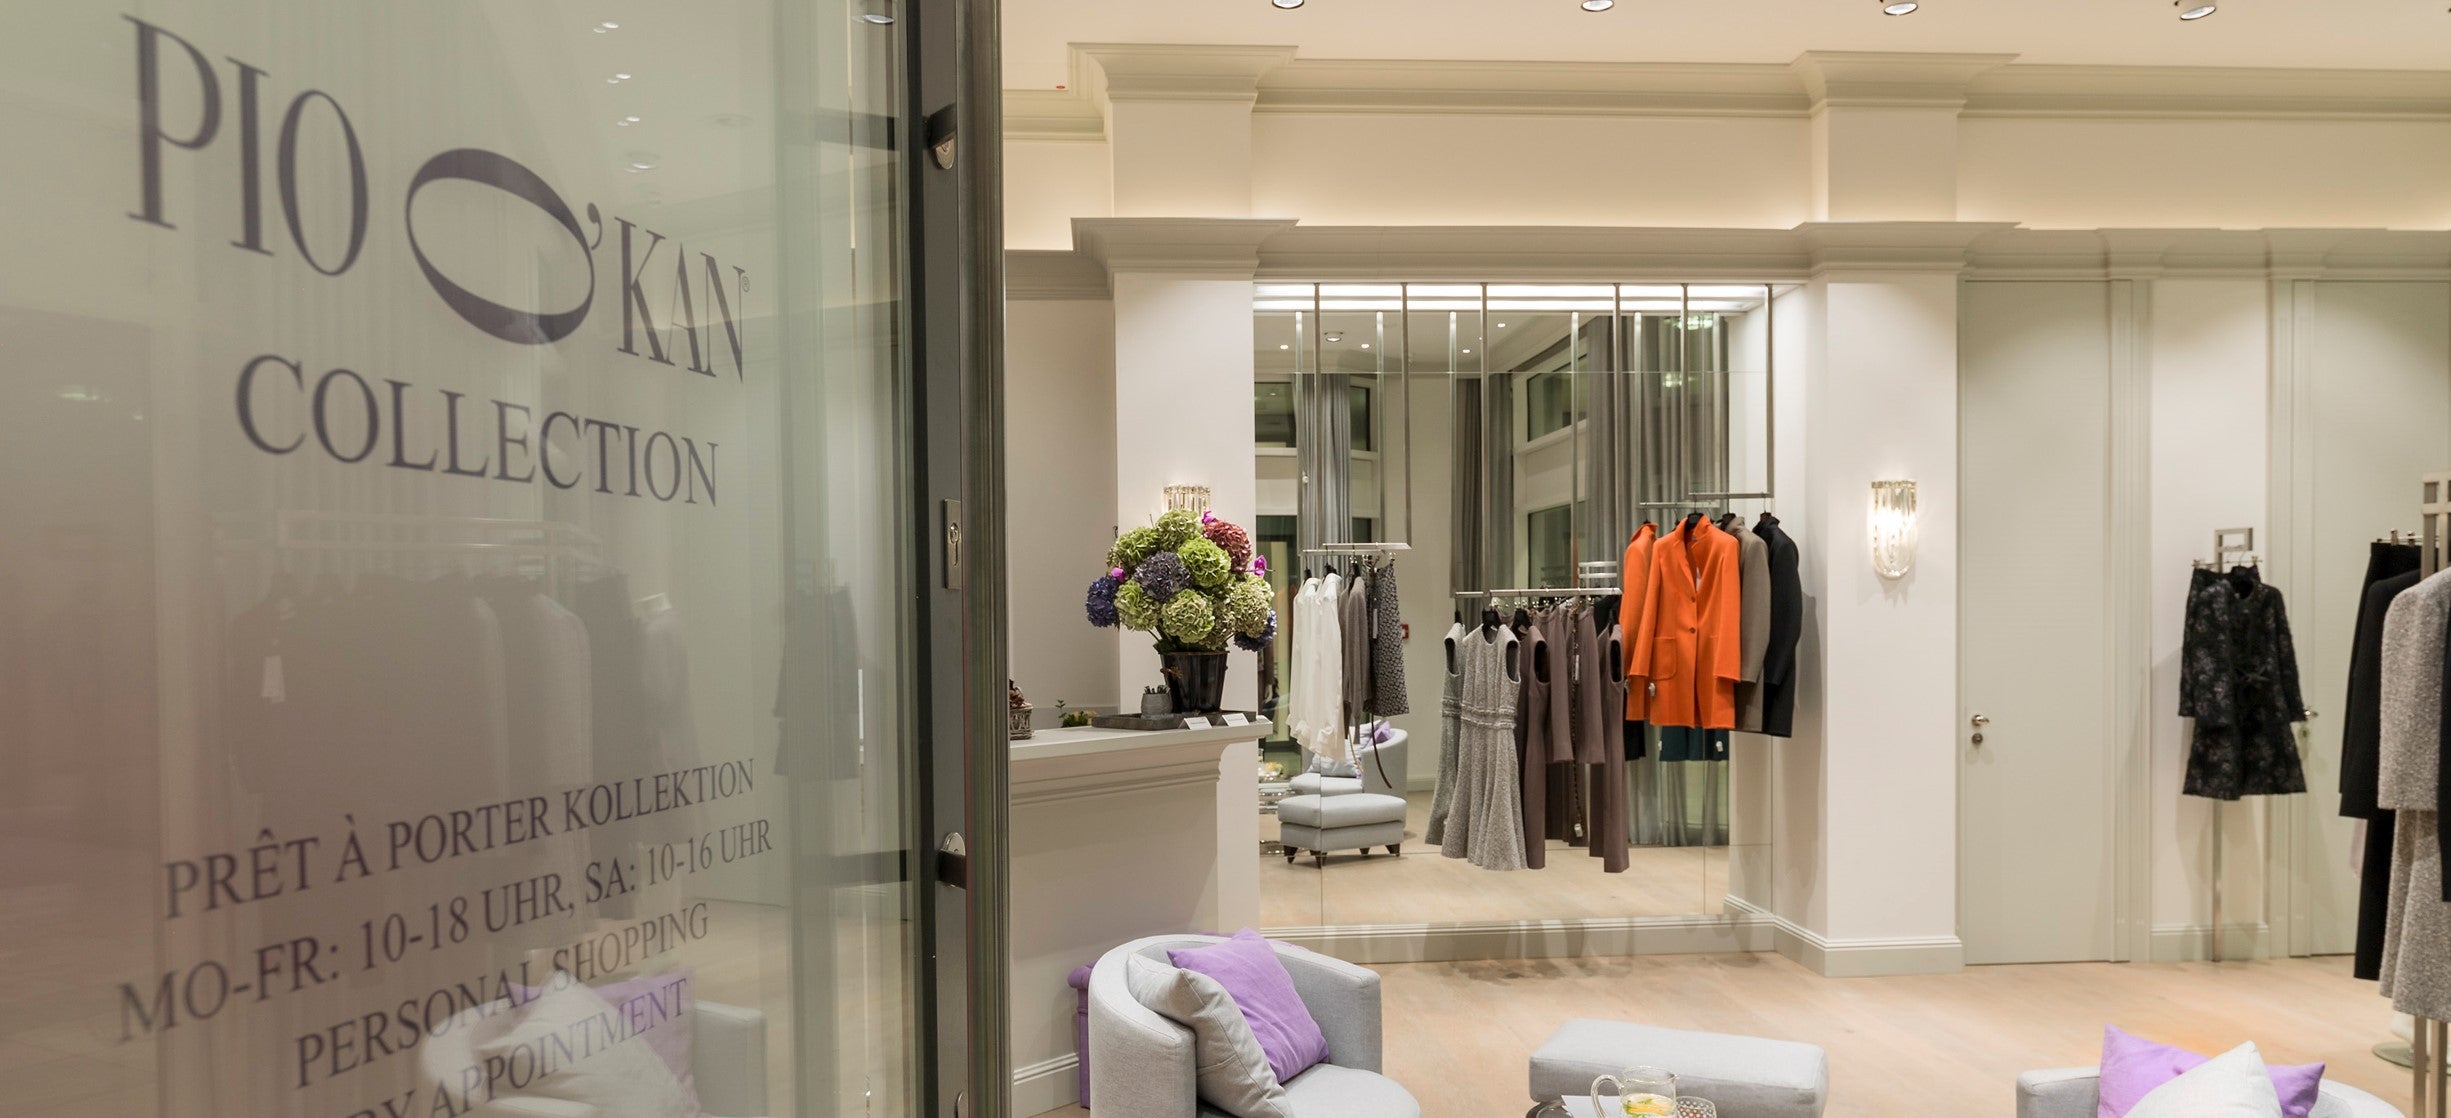 PIO O'KAN expandiert: Neuer Flagshipstore direkt neben dem Couturesalon an der Königsallee in Düsseldorf für die erste Prêt-à-Porter Kollektion in 2016